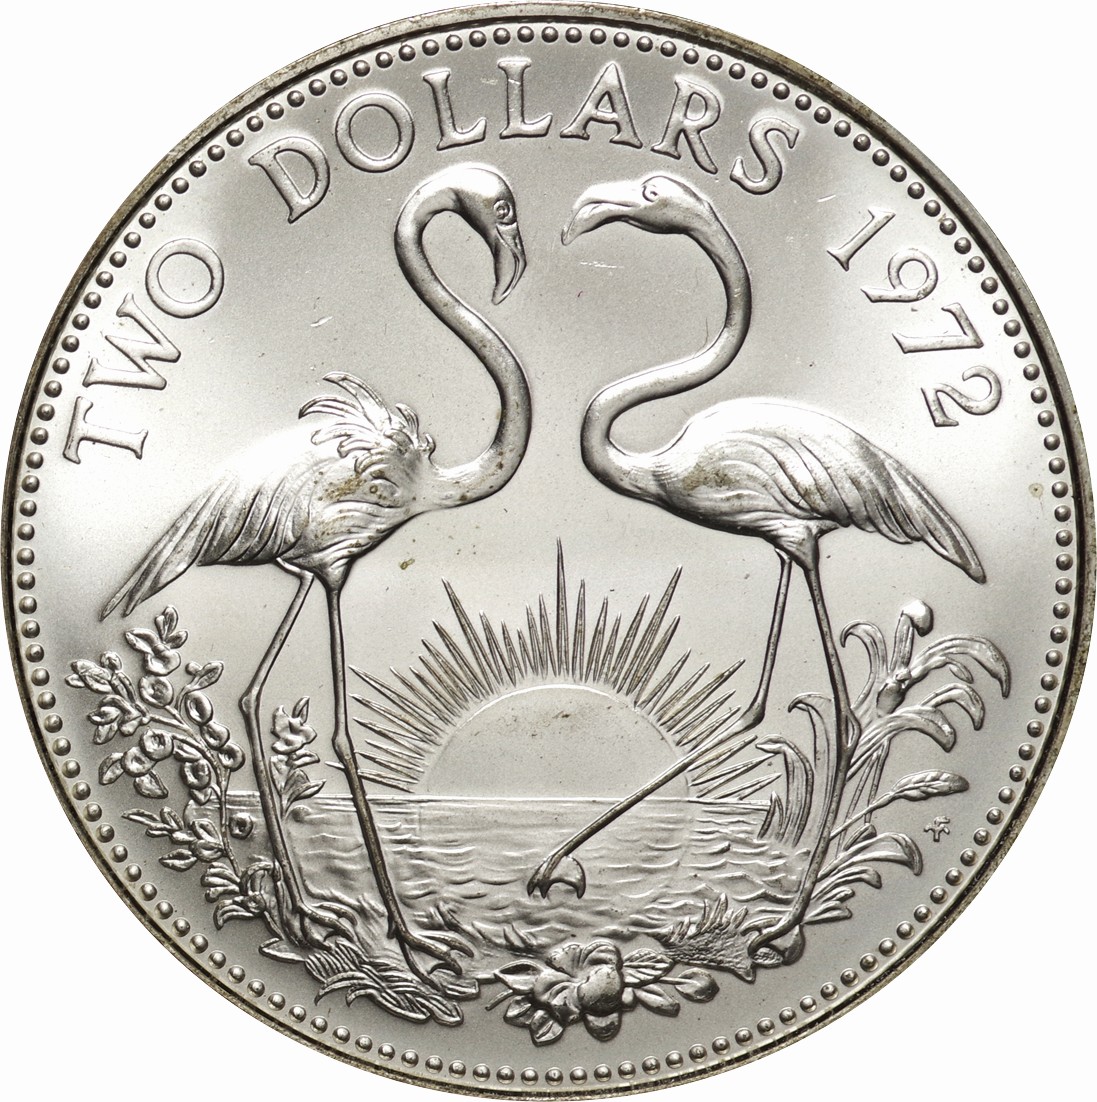 バハマ-Bahamas. Proof. Silver. 2ドル(Dollar). フラミンゴ図 2ドル 